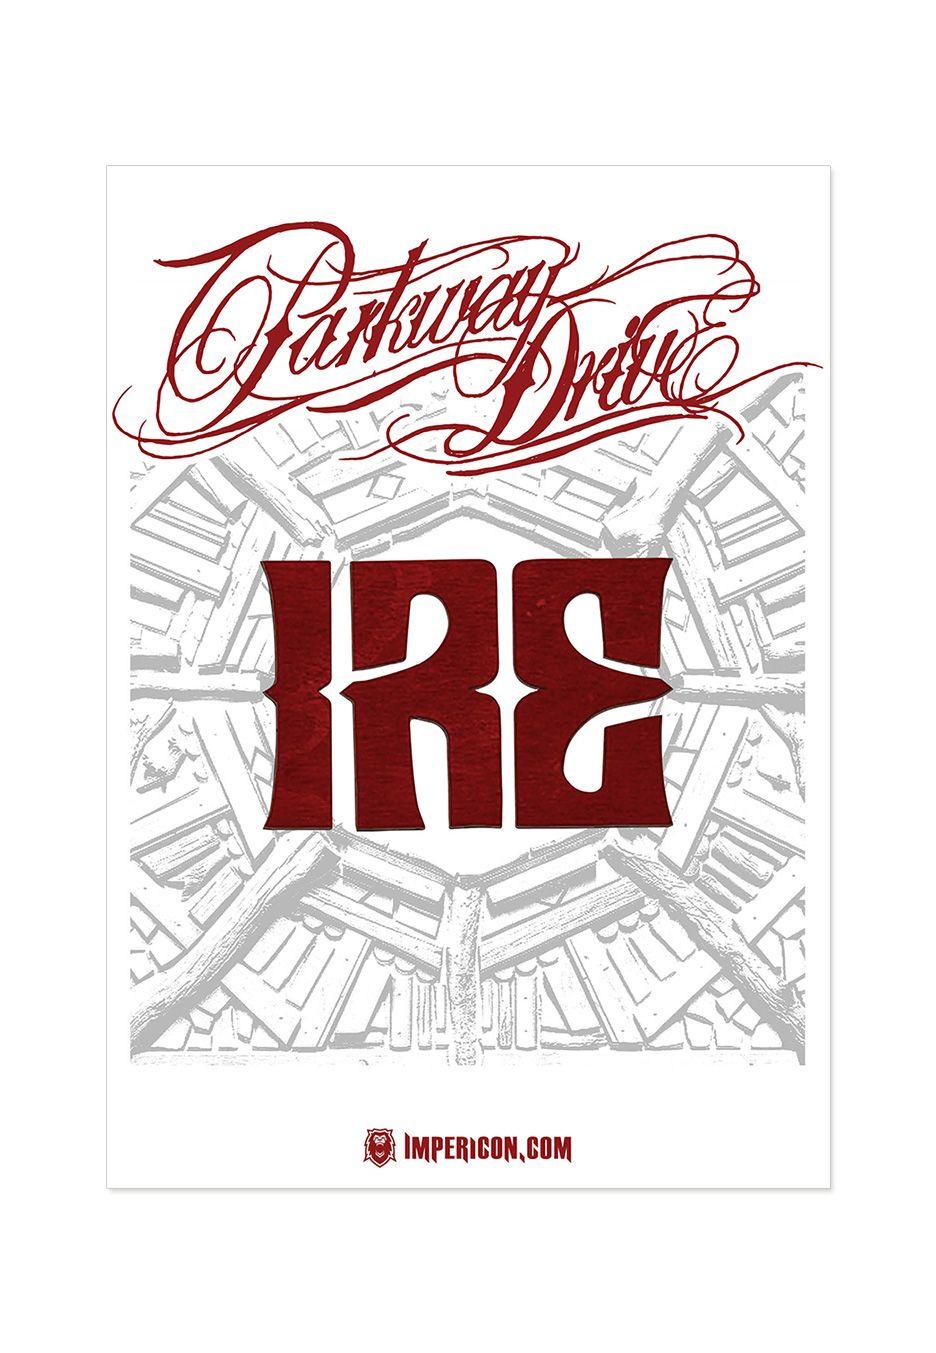 Parkway Drive Ire Logo - Parkway Drive - Ire Logo Deluxe Special Pack - T-Shirt - CDs, Vinyl ...